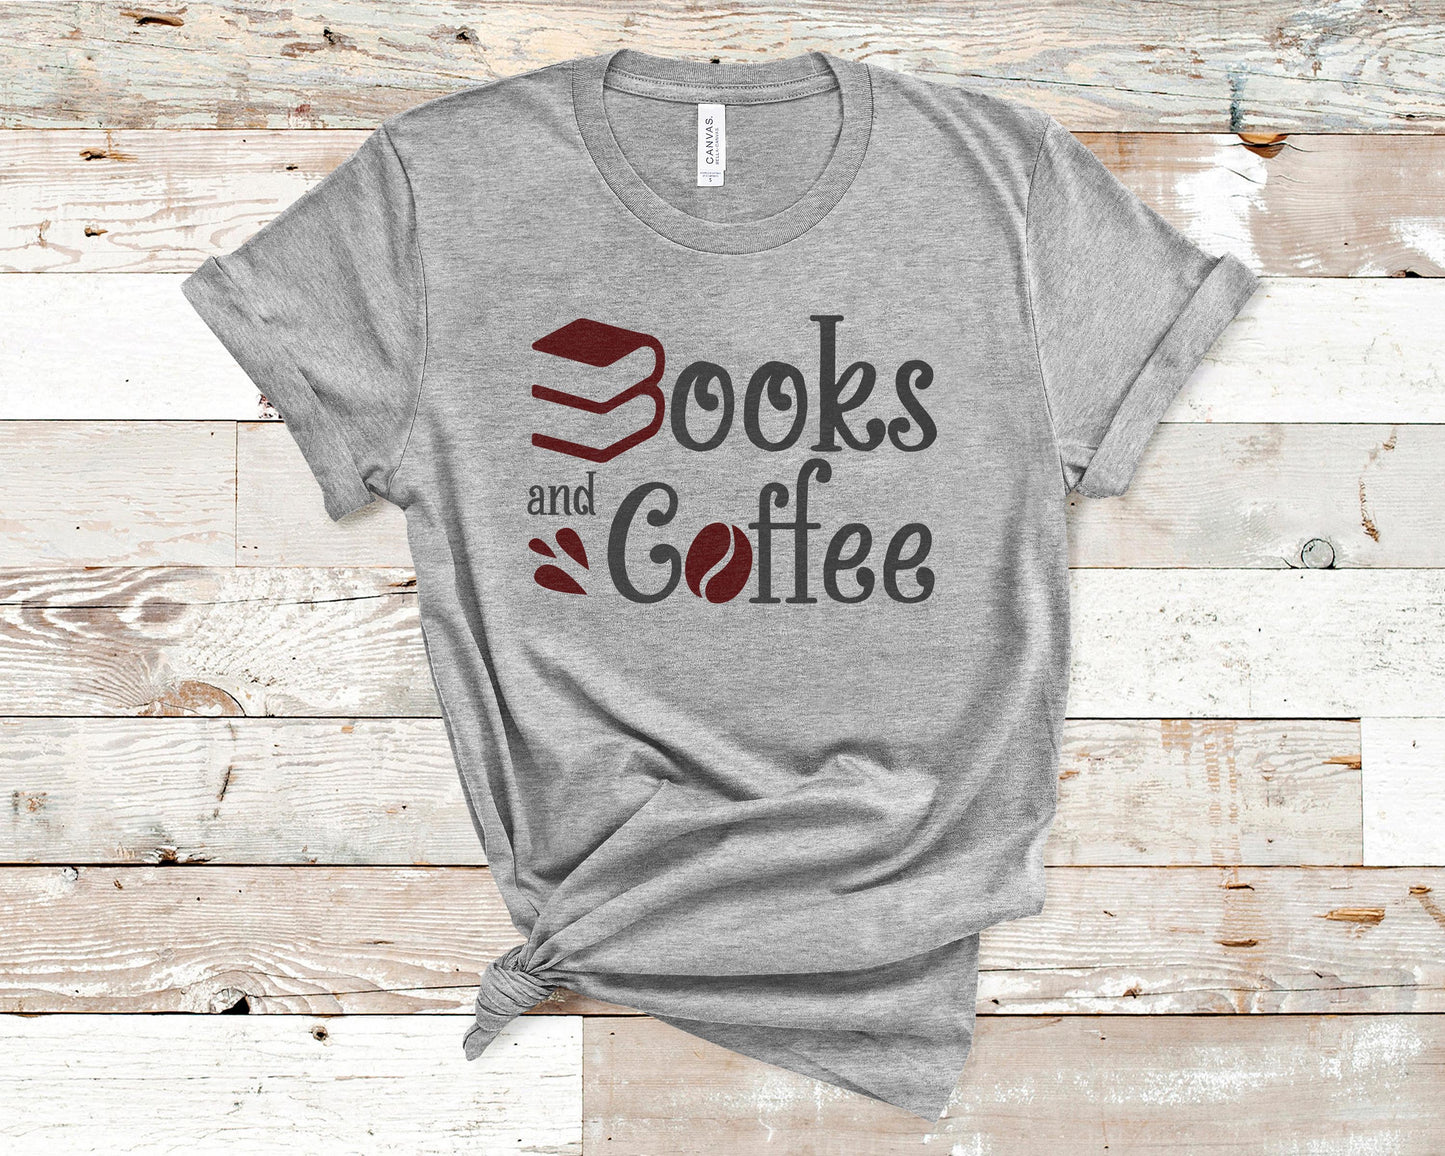 Books & Coffee - Coffee Lovers